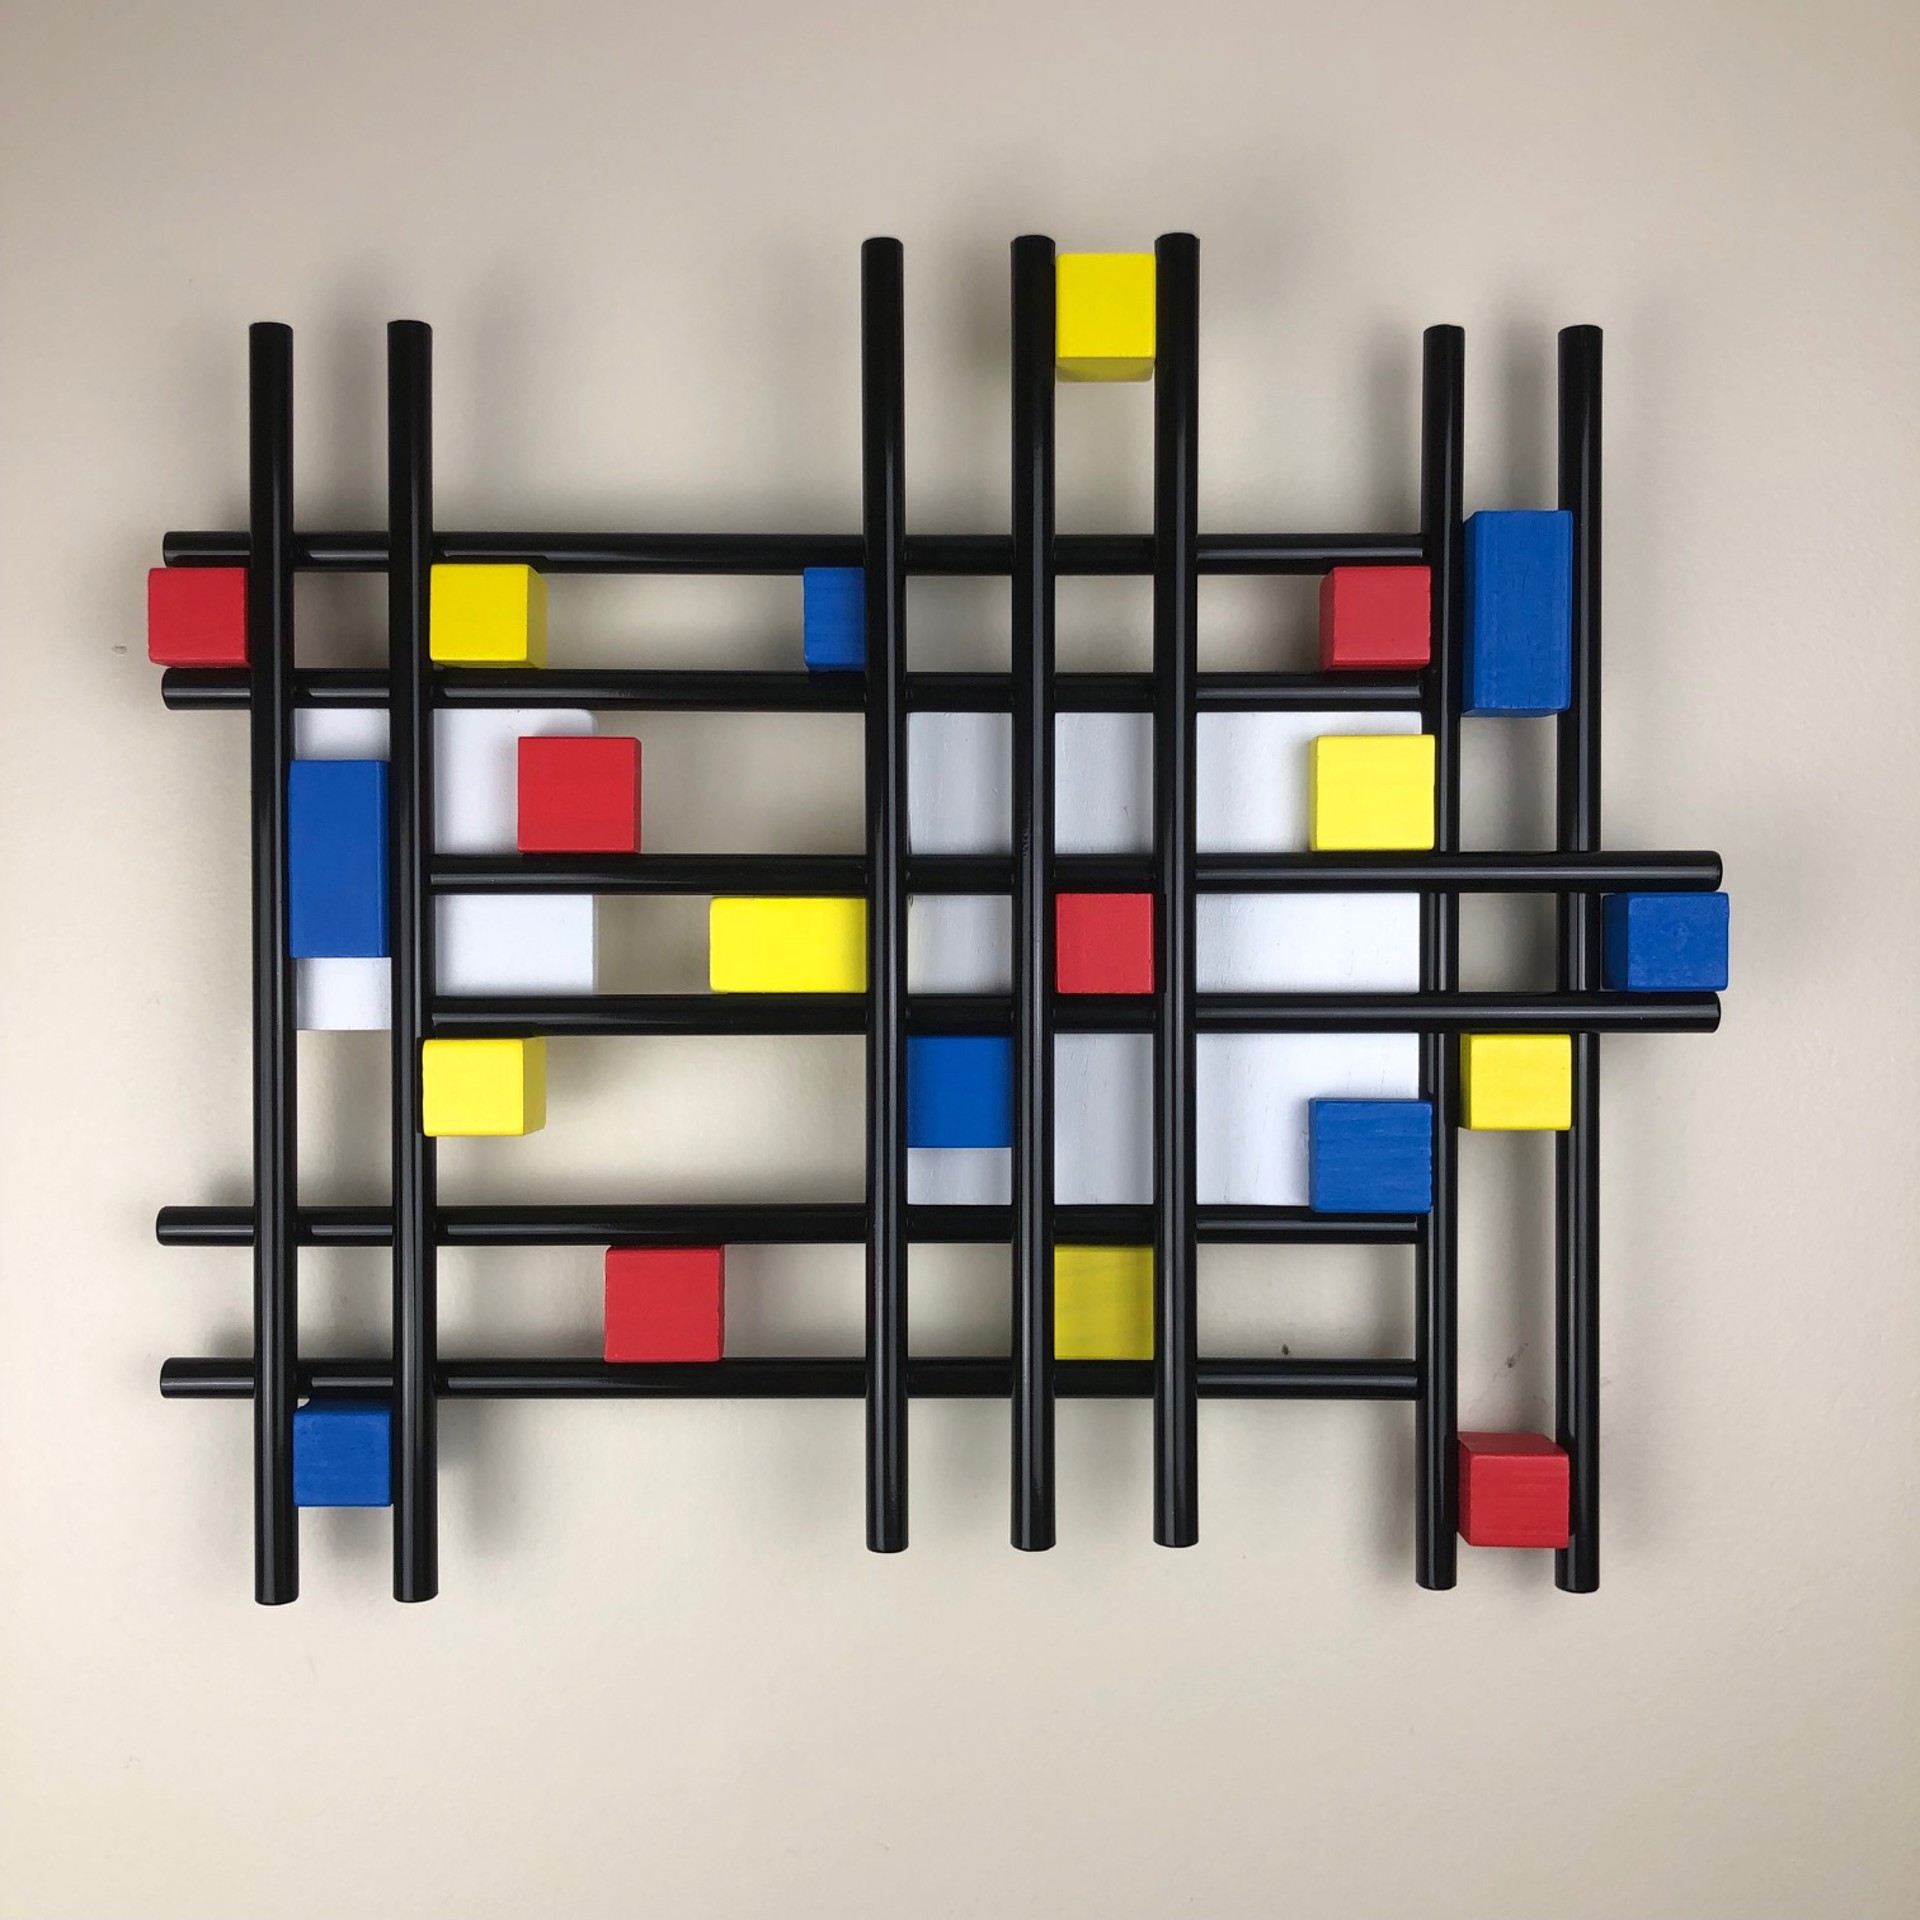 2 Panel Mondrian by Joel Reines